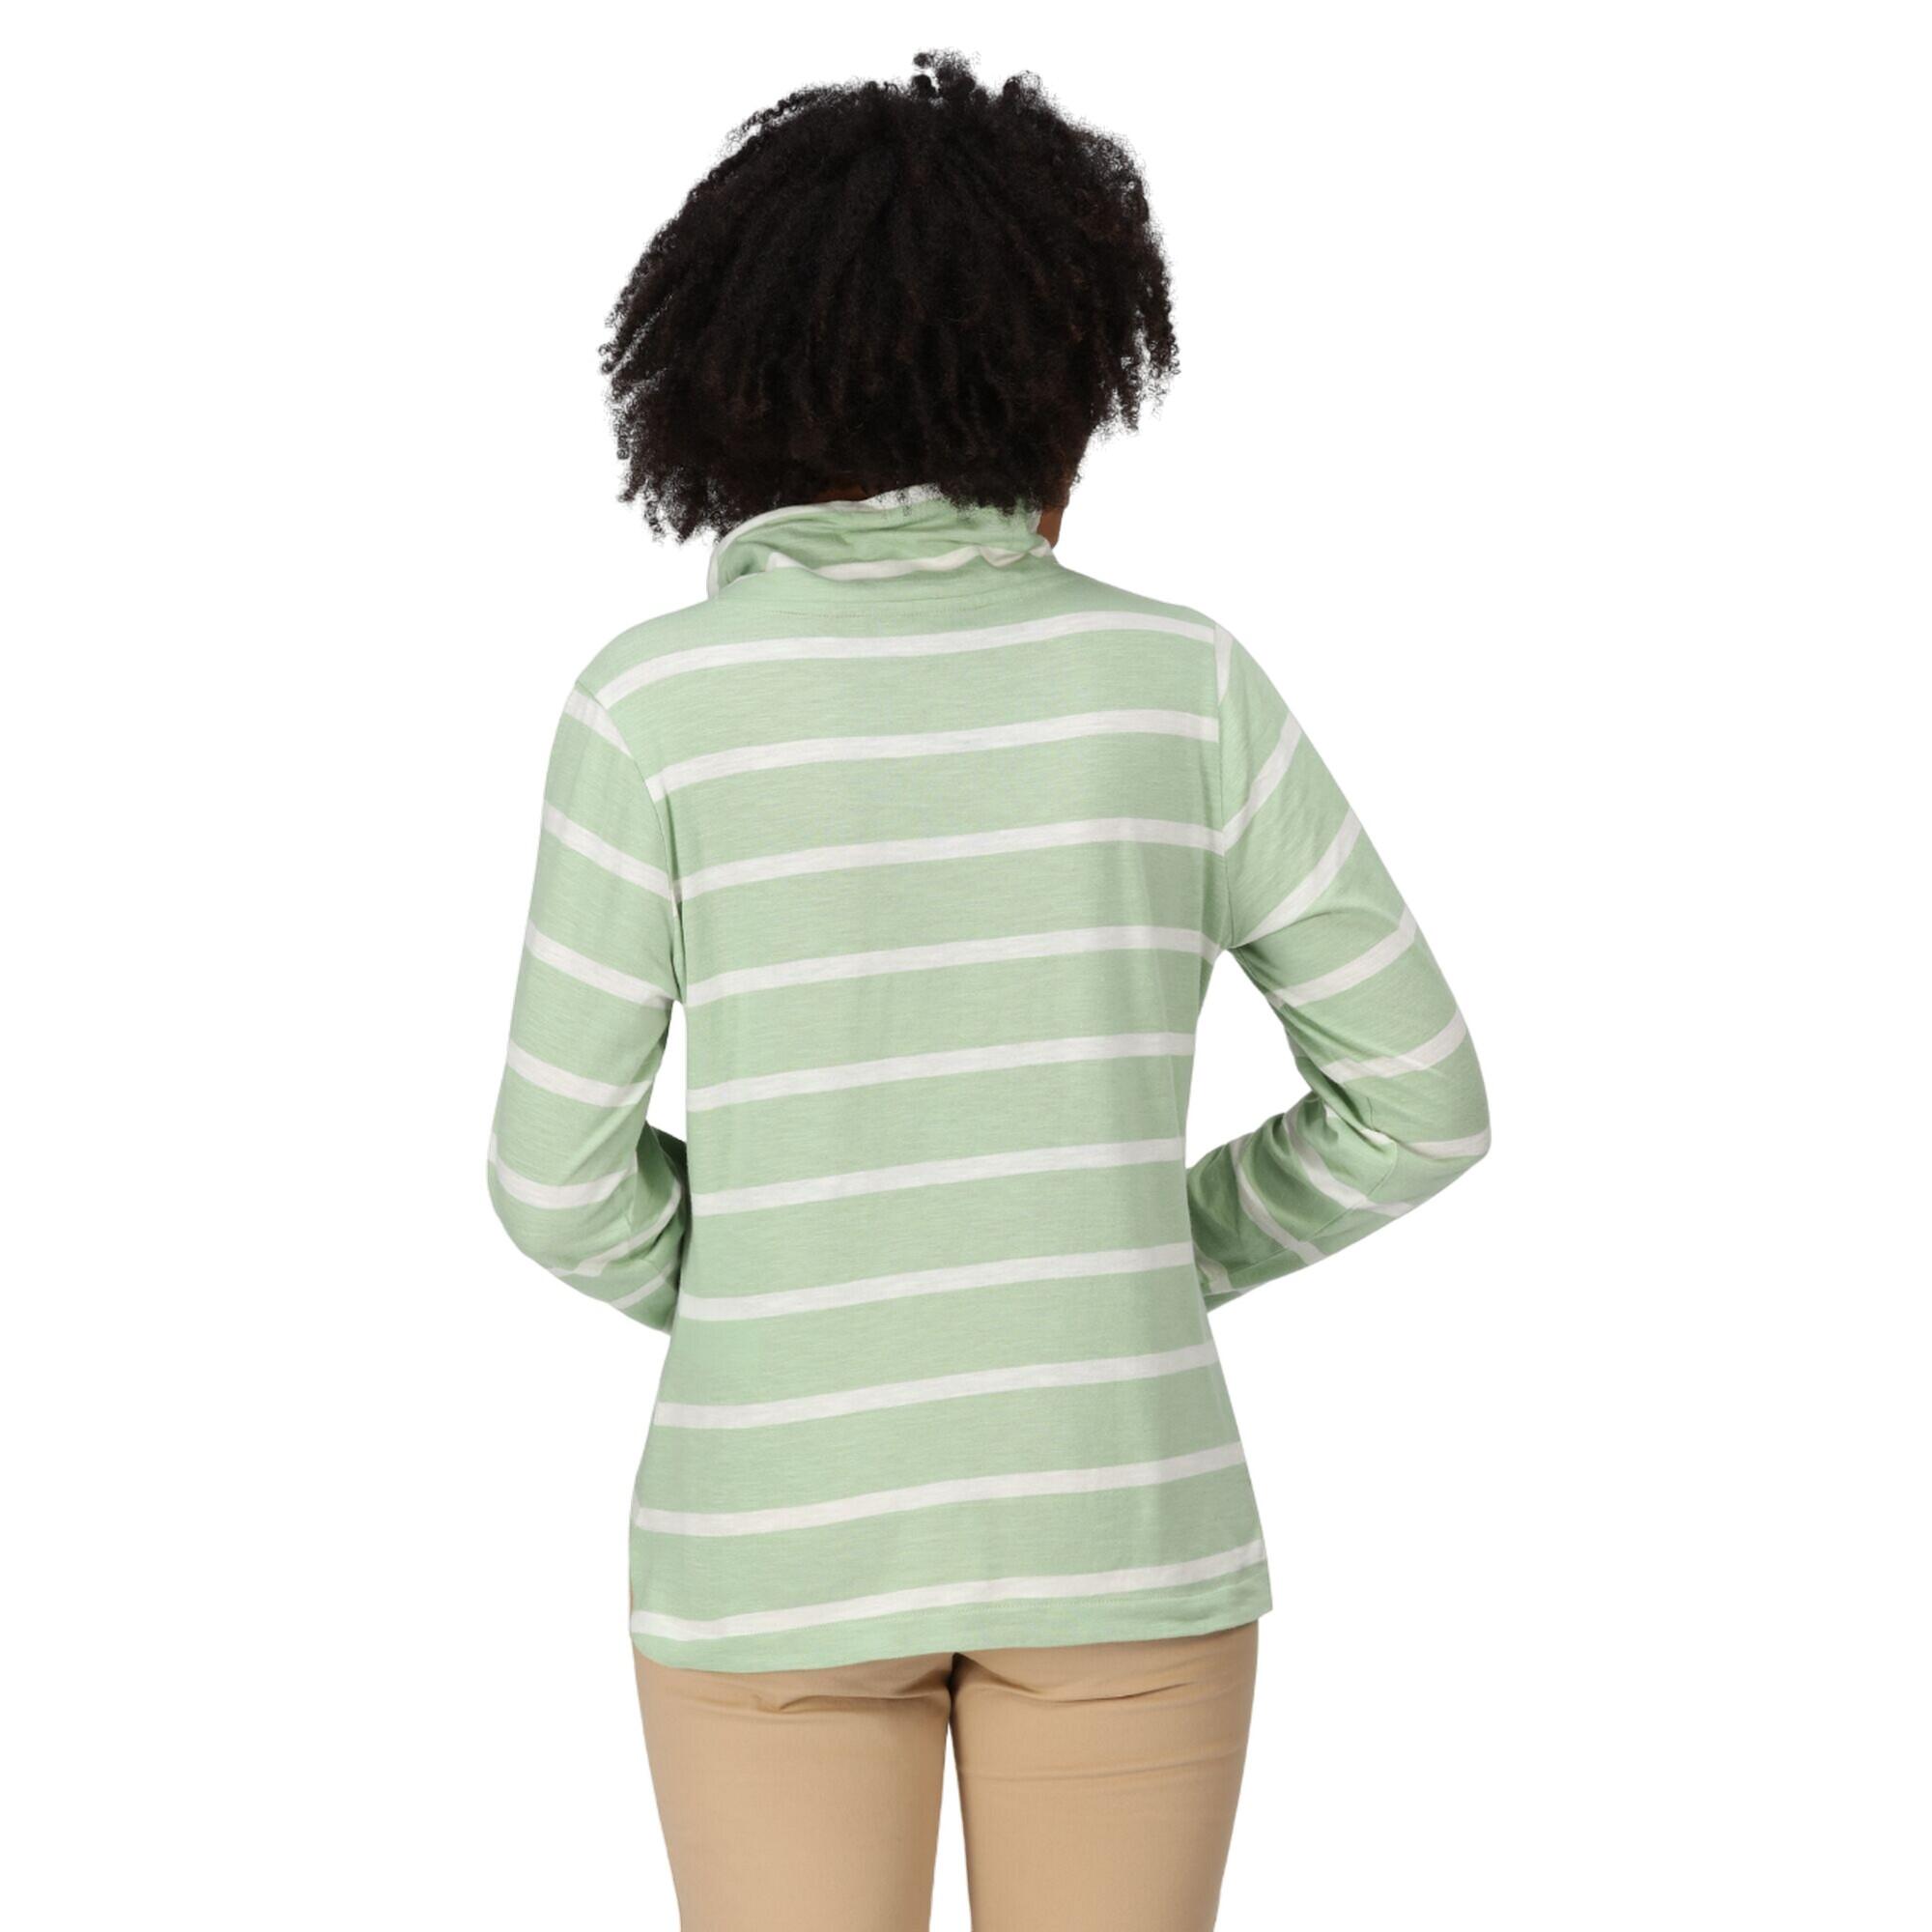 Womens/Ladies Helvine Striped Sweatshirt (Quiet Green/White) 4/5